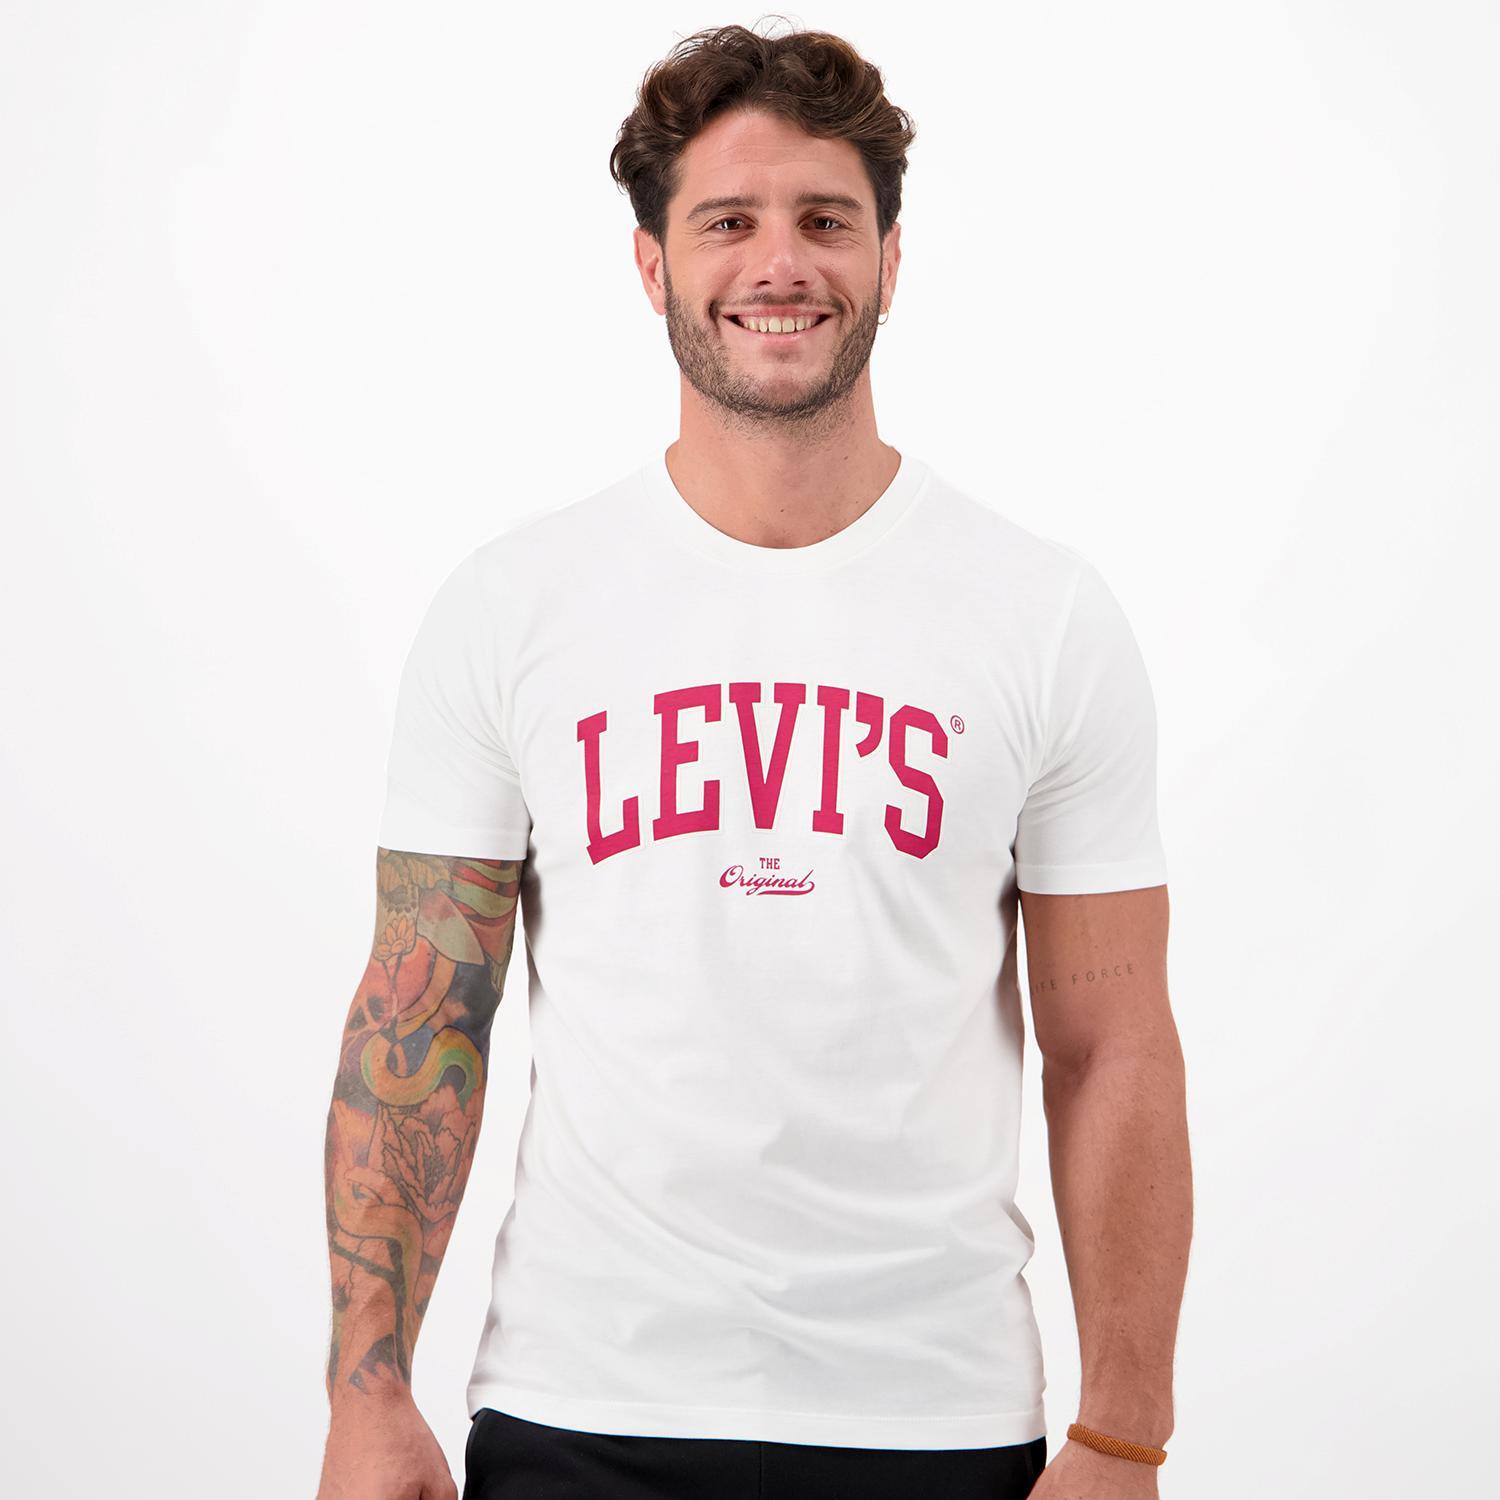 Levis Levi's Orig Wit T-shirt Heren